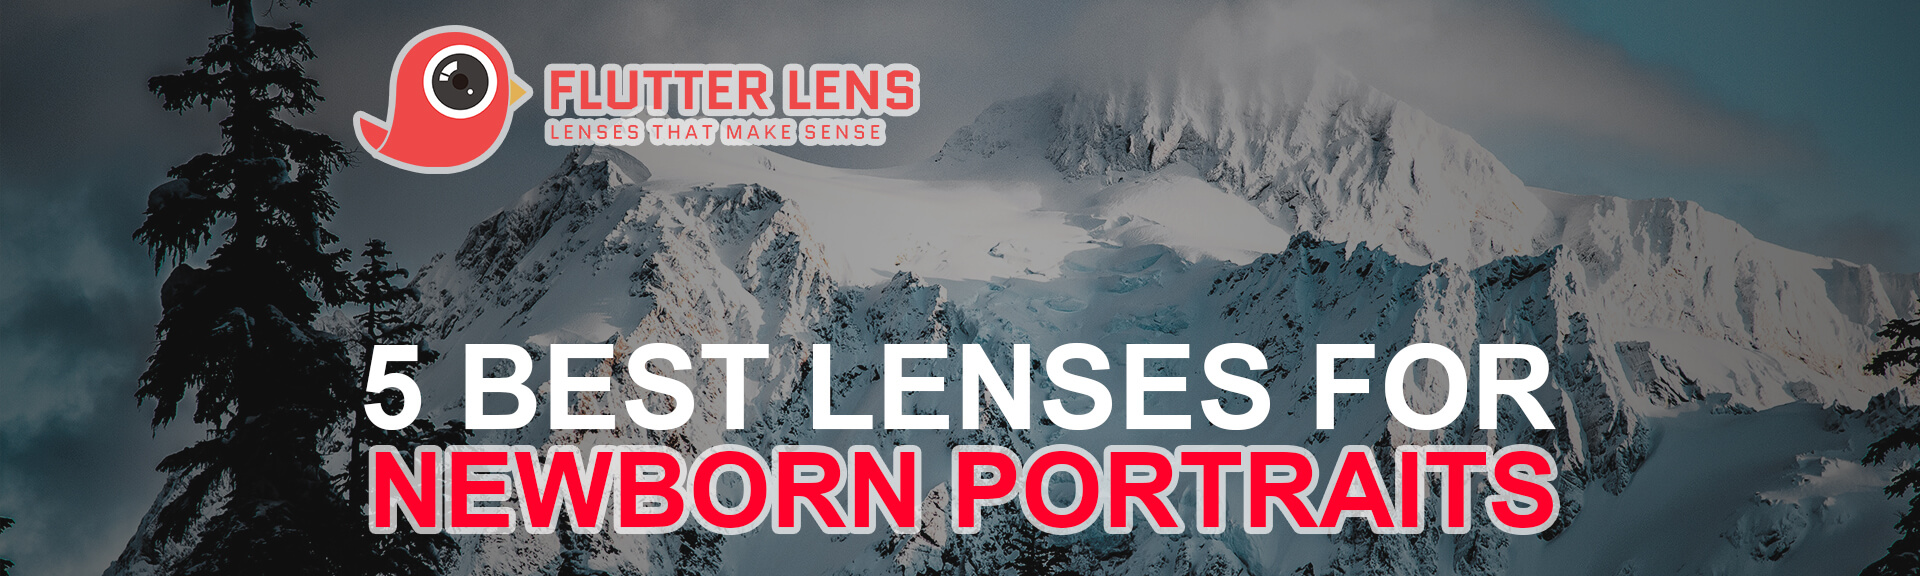 5 Best Lenses for Newborn Portraits